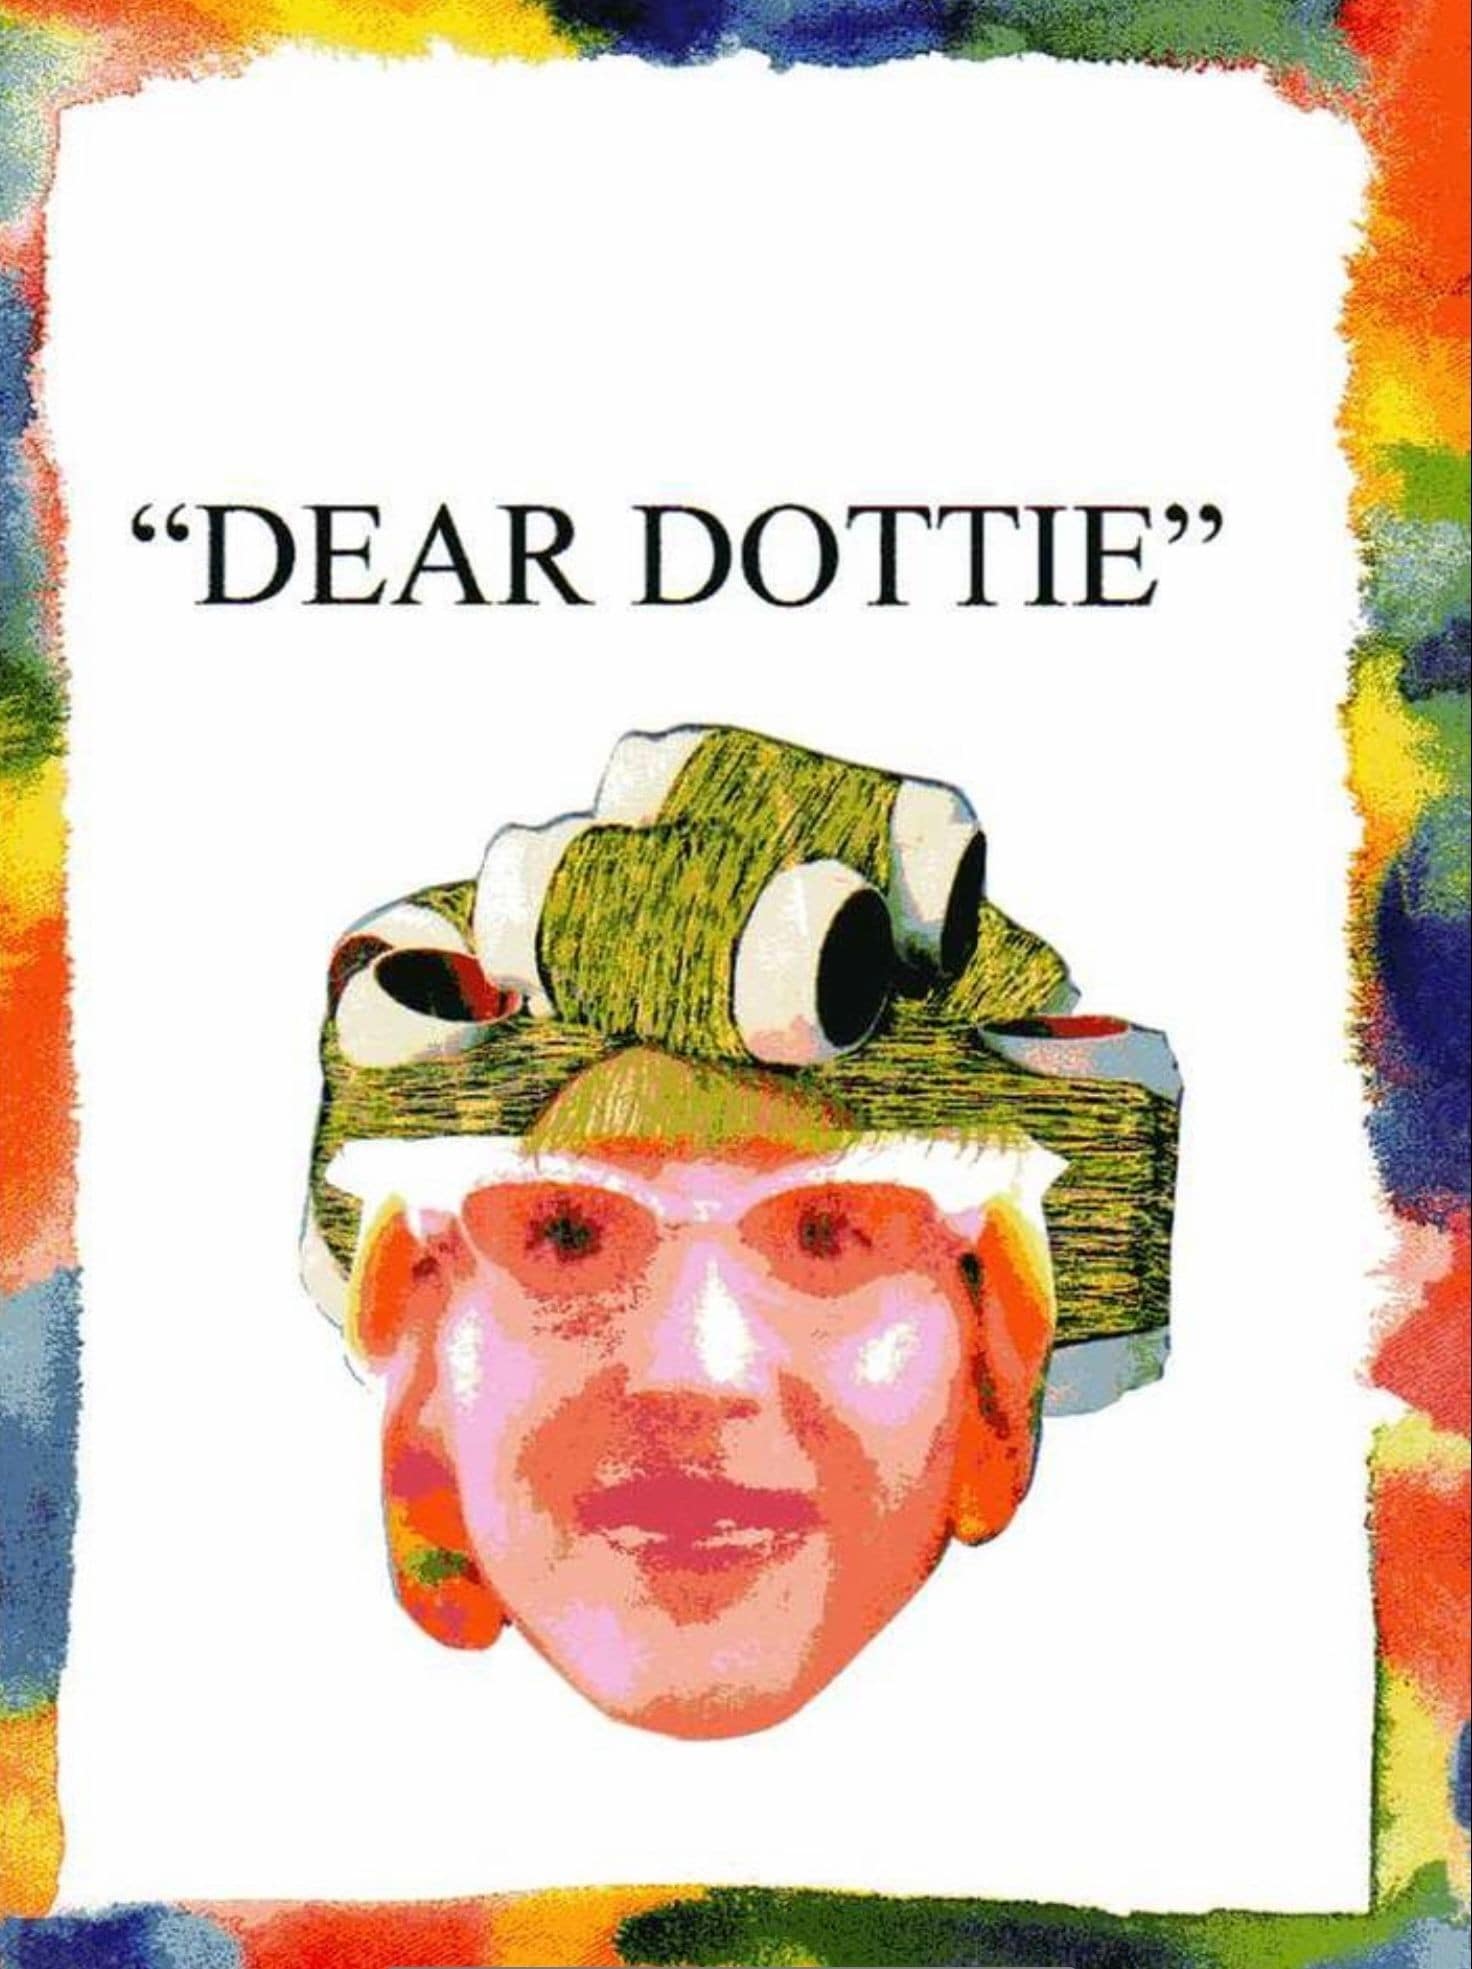 Dear Dottie advice